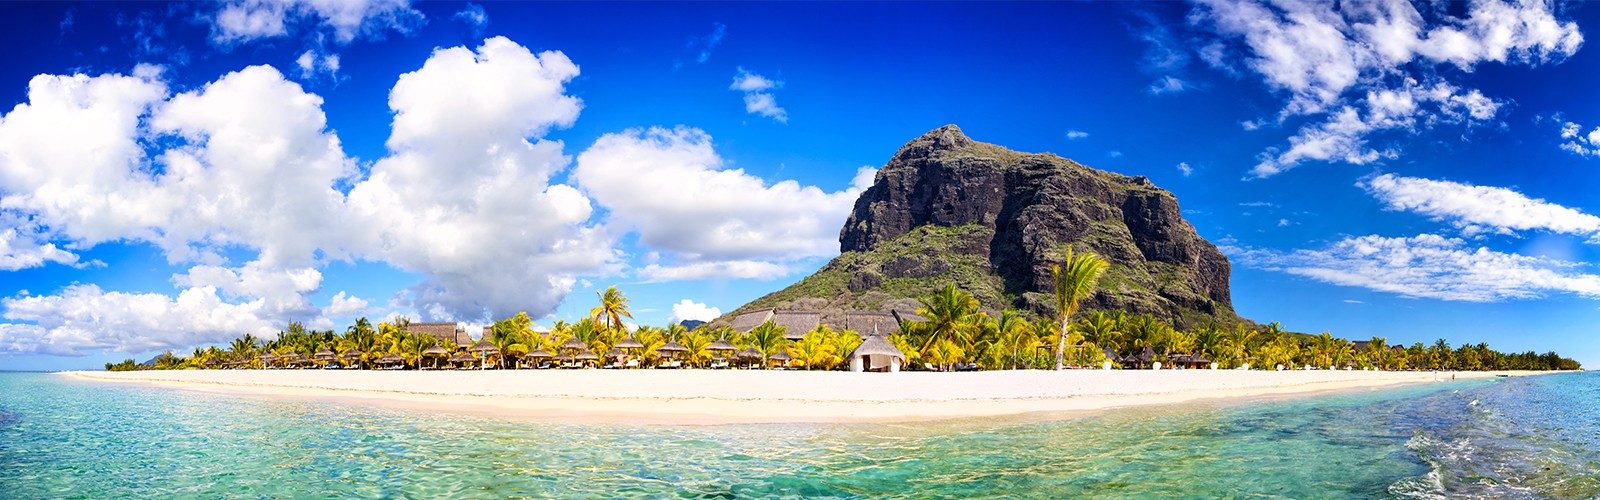 Luxury Mauritius Destination Wedding Packages Header 1600x500